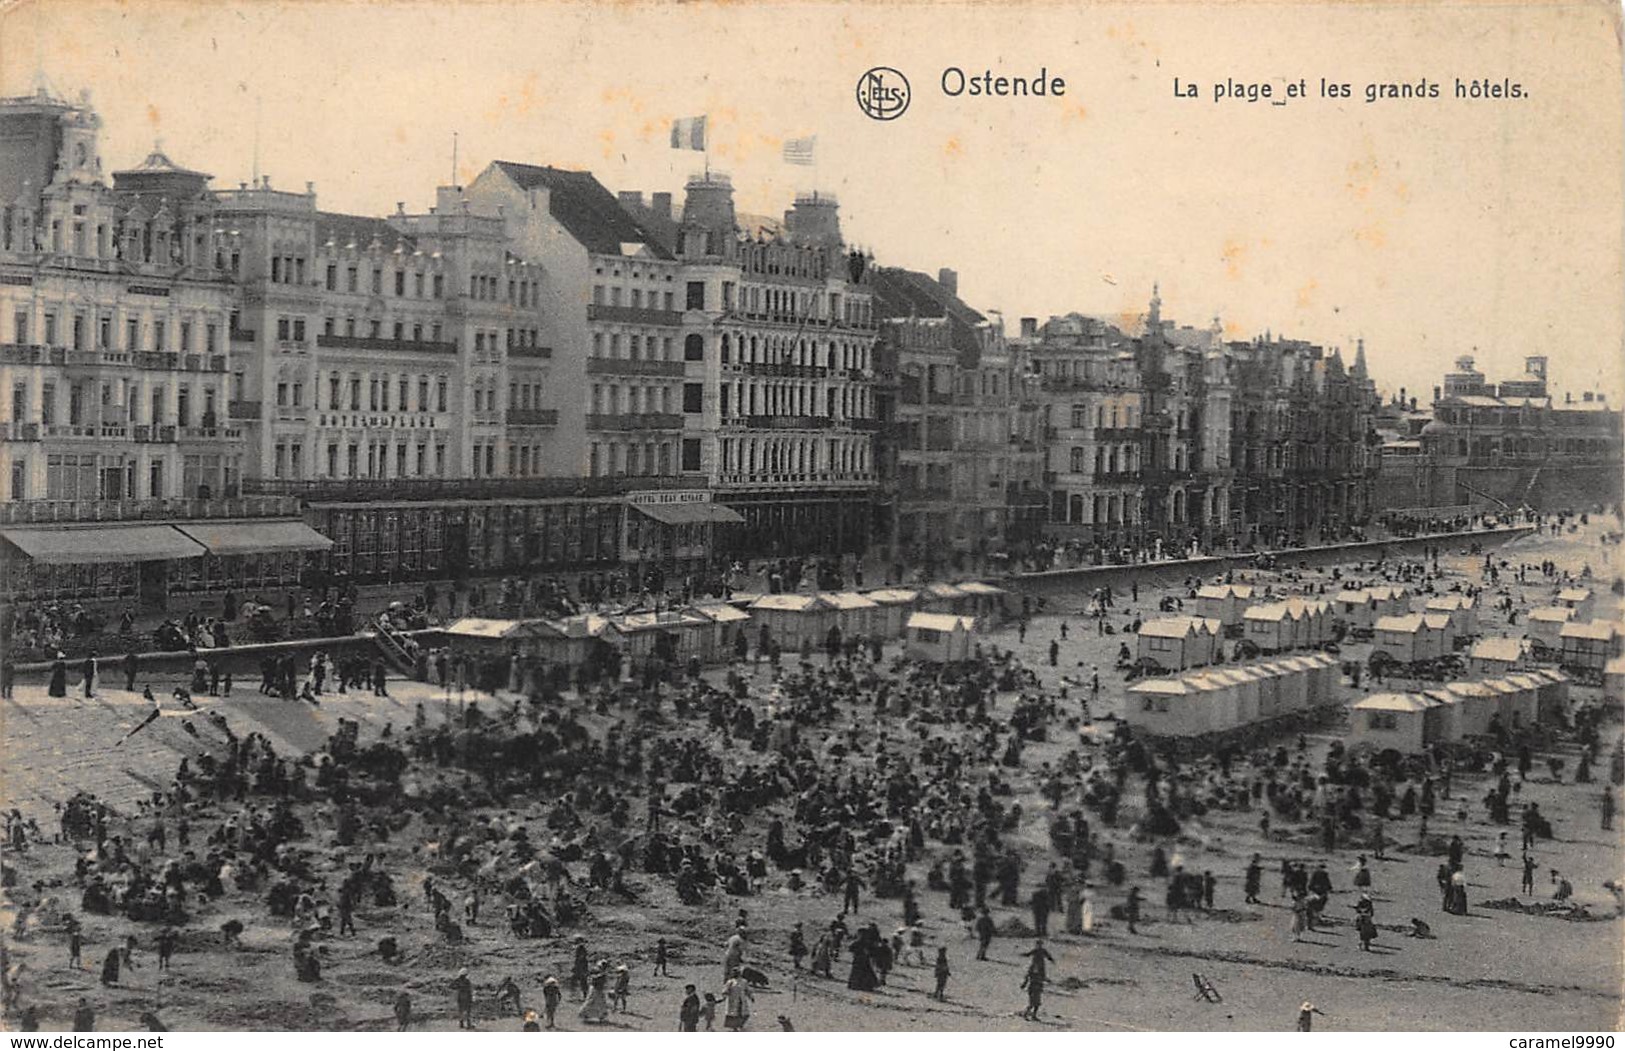 Oostende  Ostende  België verzameling van 72 verschillende prachtige kaarten van Hotel tot villa. Oude kaarten! Lot 3